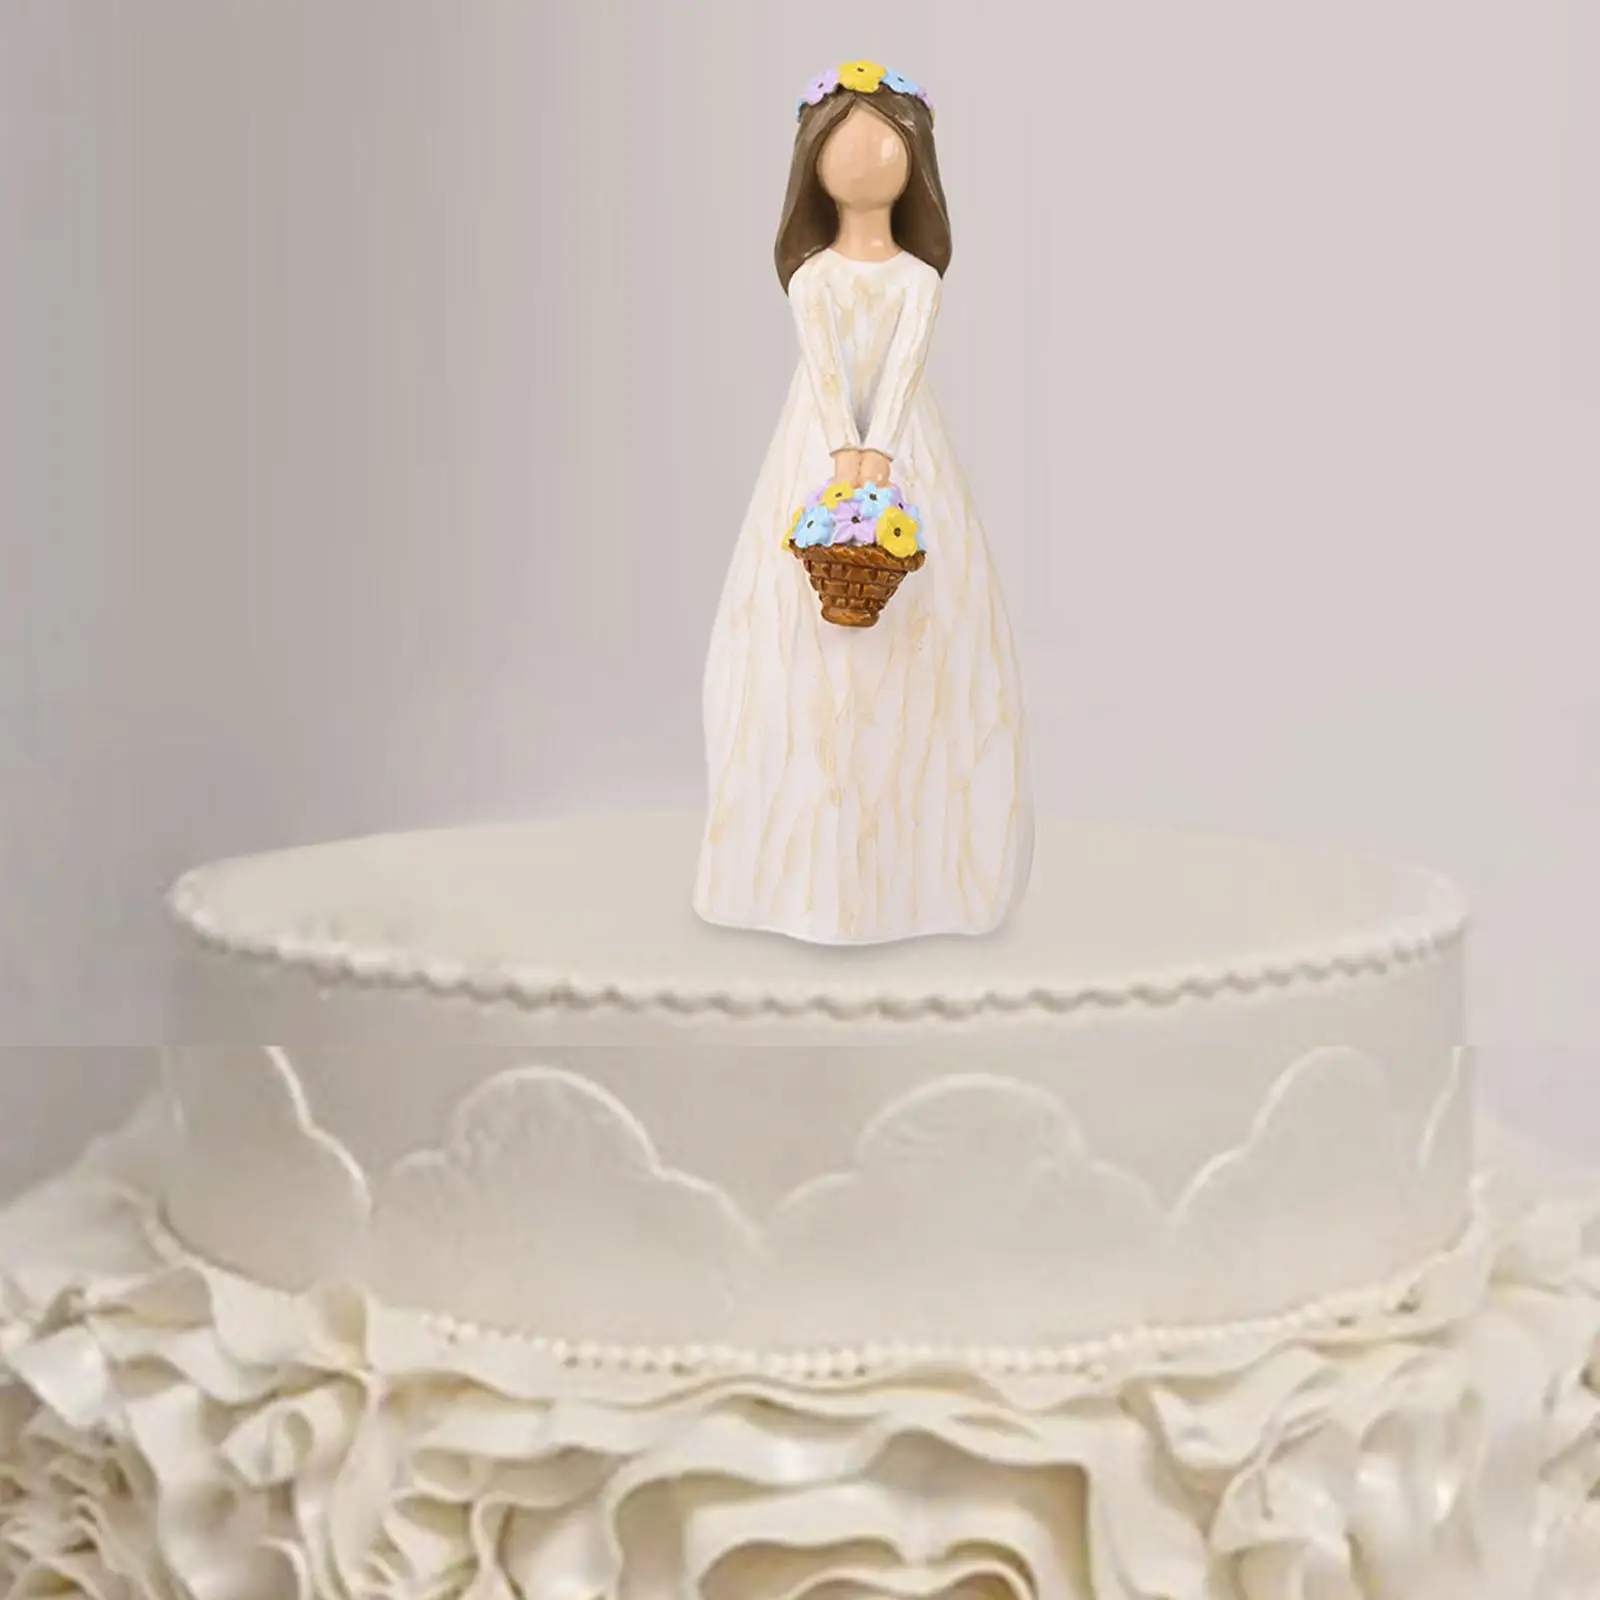 Фигурка девушки, украшение для торта, фигурка из смолы, элегантные украшения для торта на юбилей, корпоратив, подарок на День Святого Валентина